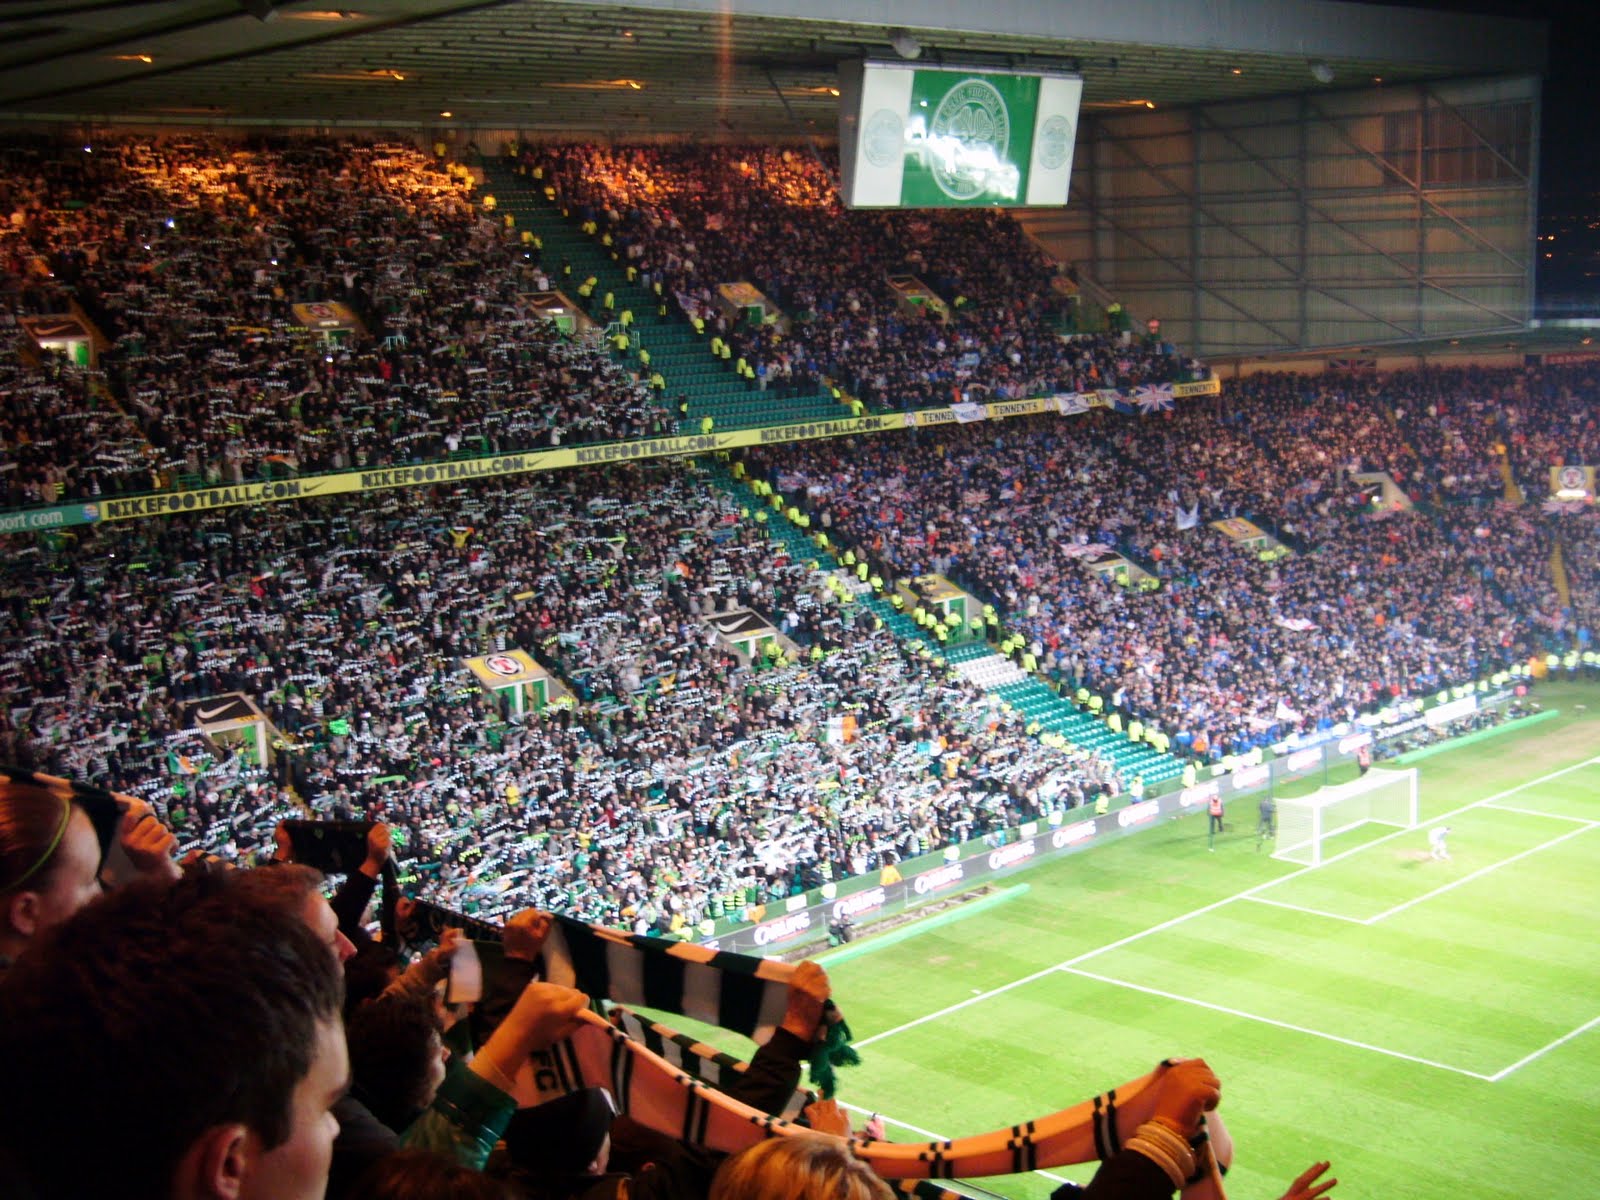 My Football Travels: Celtic Park (Celtic v Rangers)